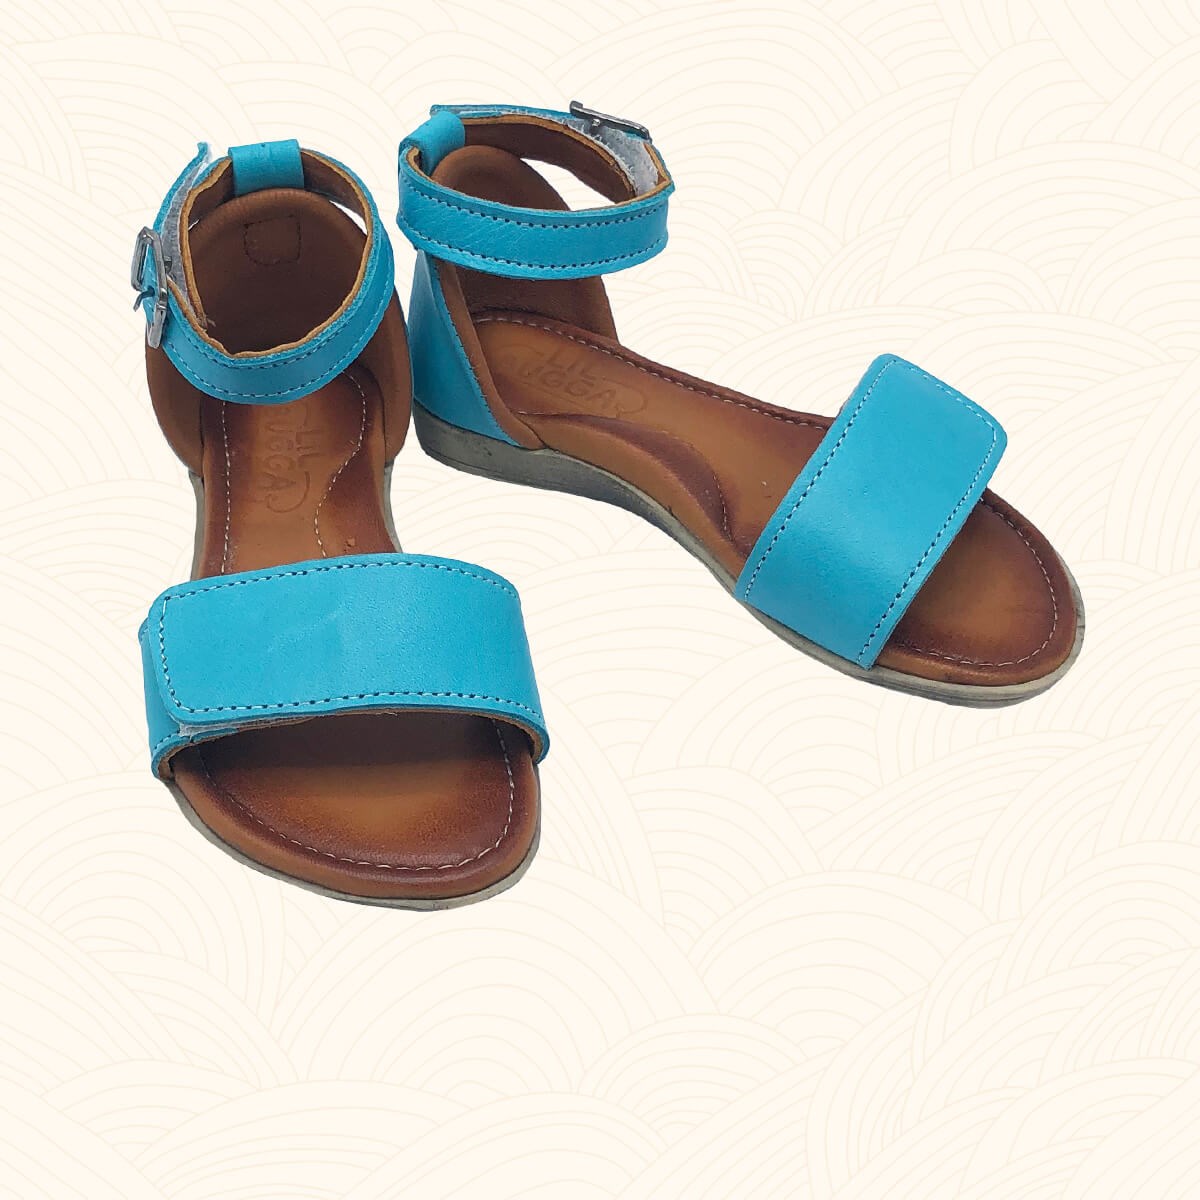 Kız Çocuk Deri Sandalet, Satsuma - Mavi Renk, 2114 | Lilbugga